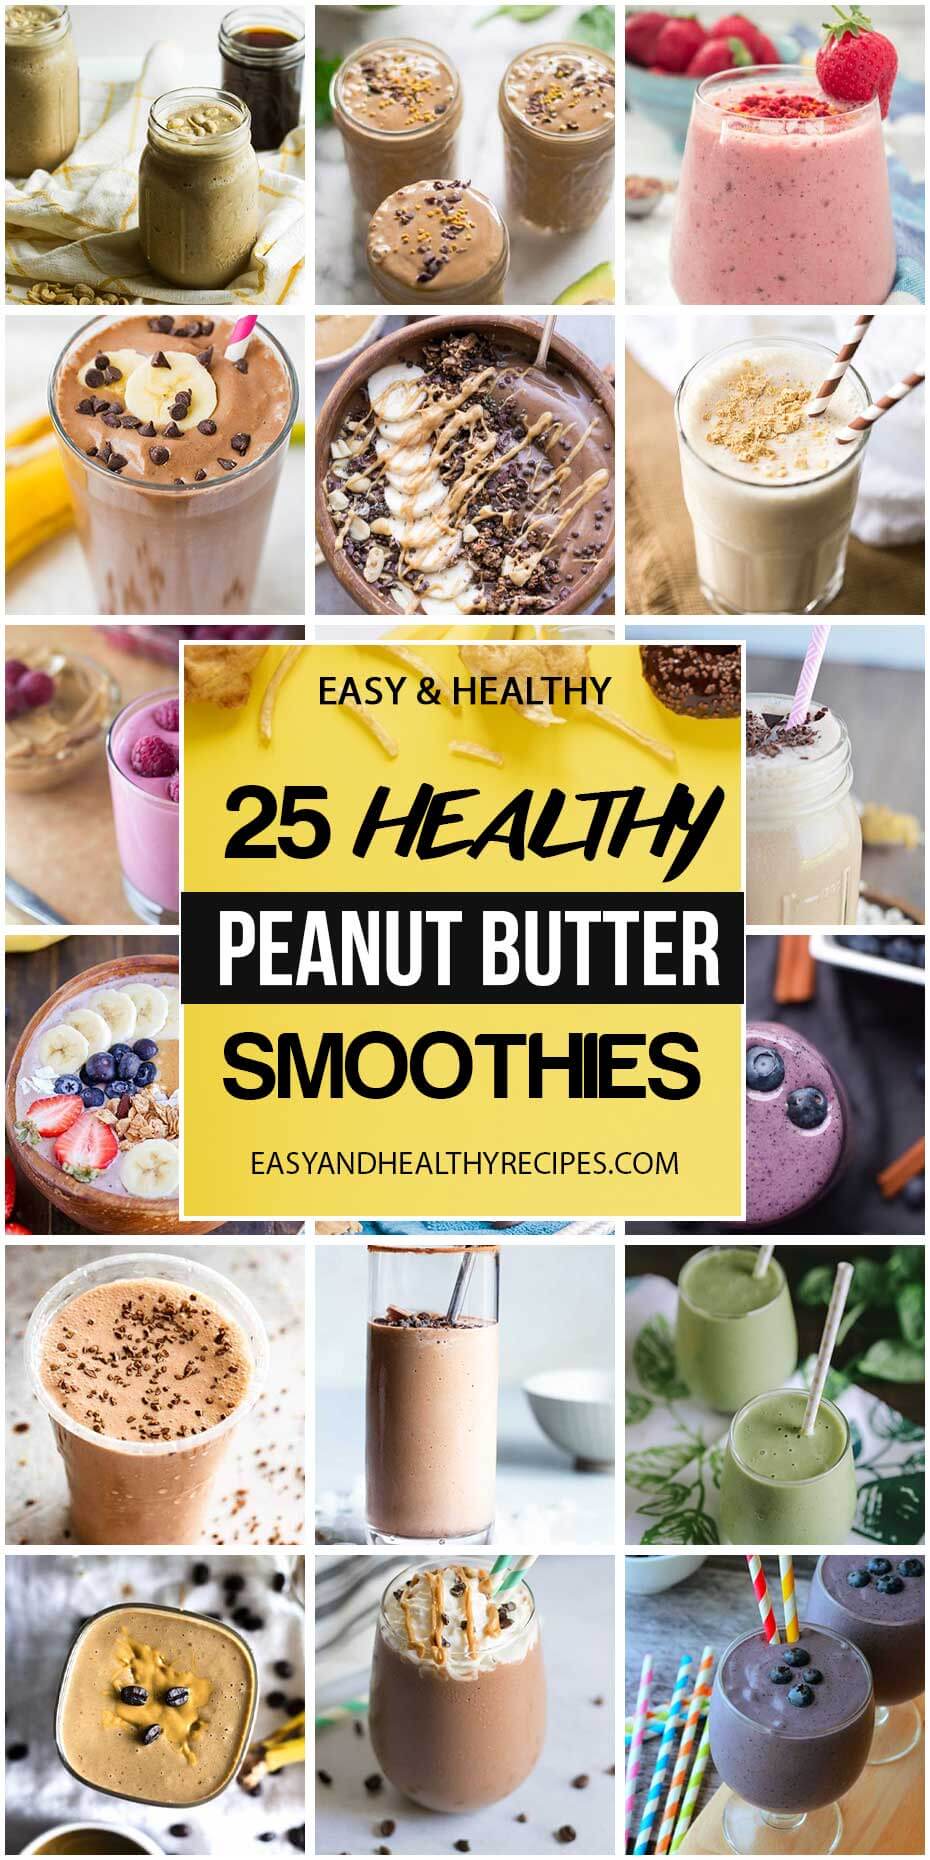 25 “Taste-Teasing” Peanut Butter Smoothies